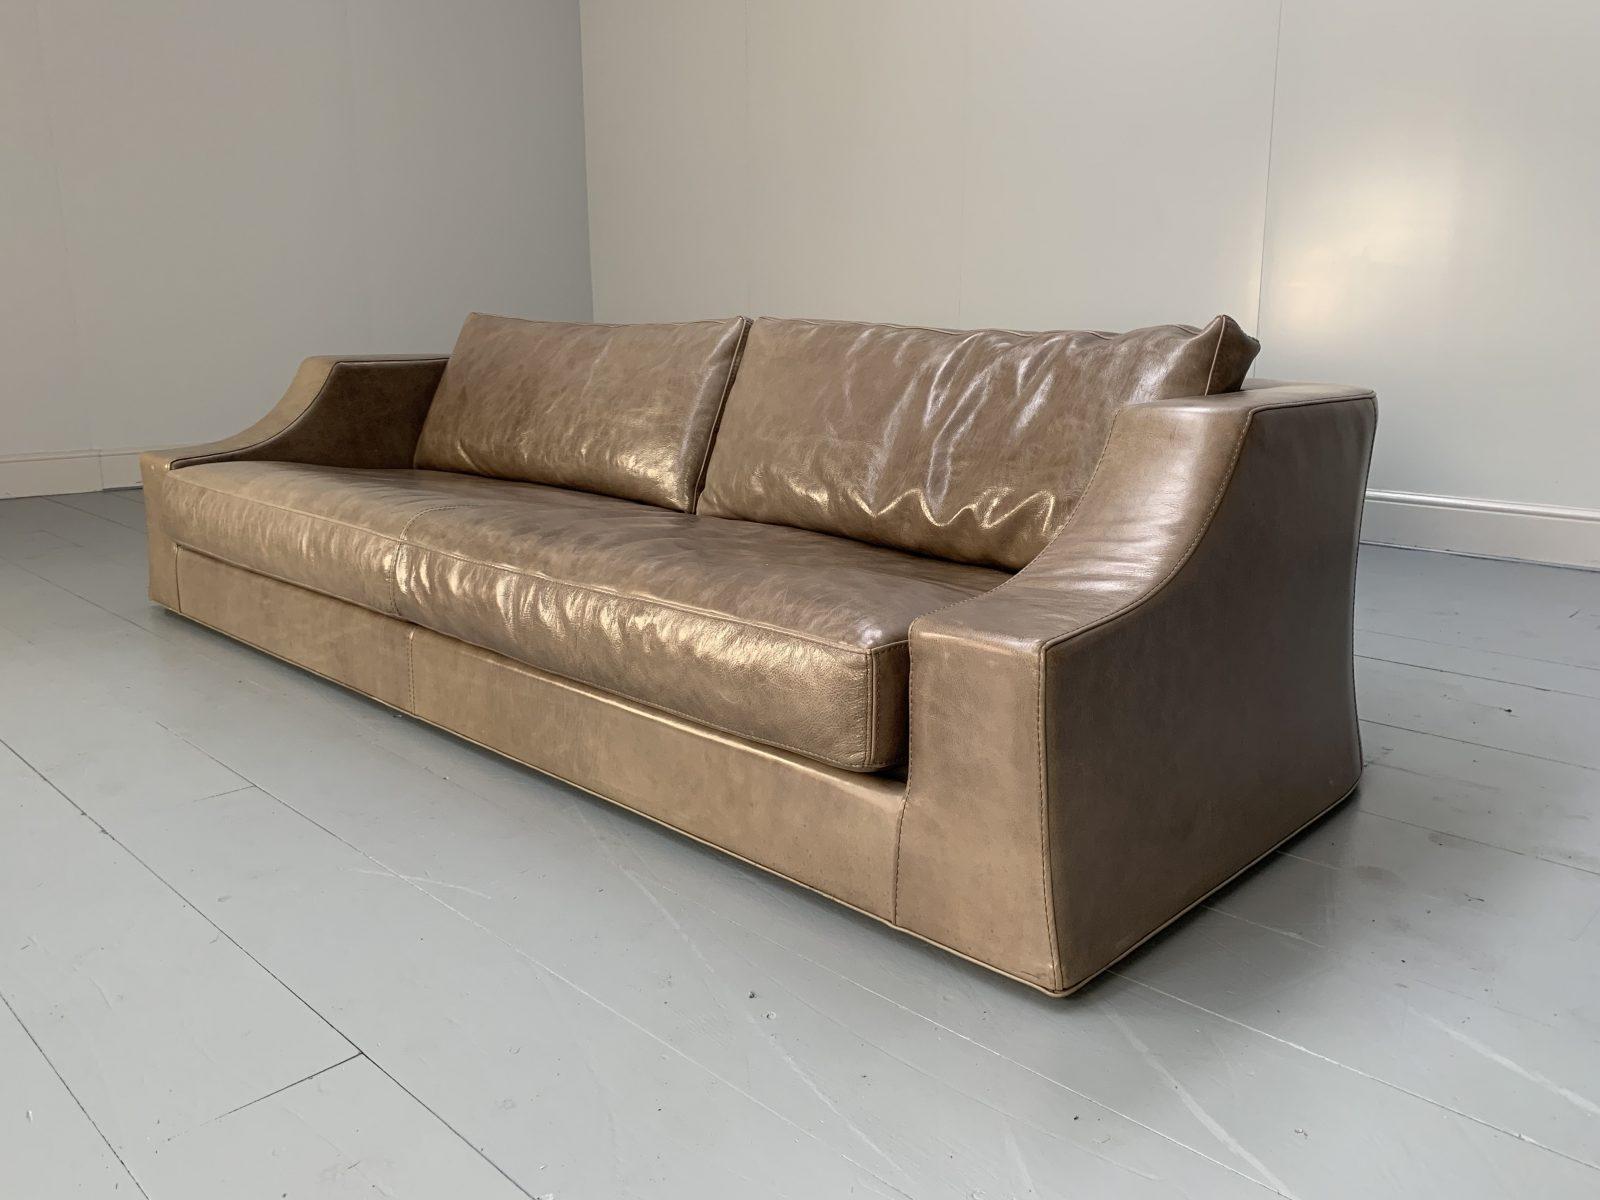 Voici un spectaculaire et rare canapé 4 places de la maison de meubles italienne de renommée mondiale Baxter, habillé d'un sublime cuir crème 